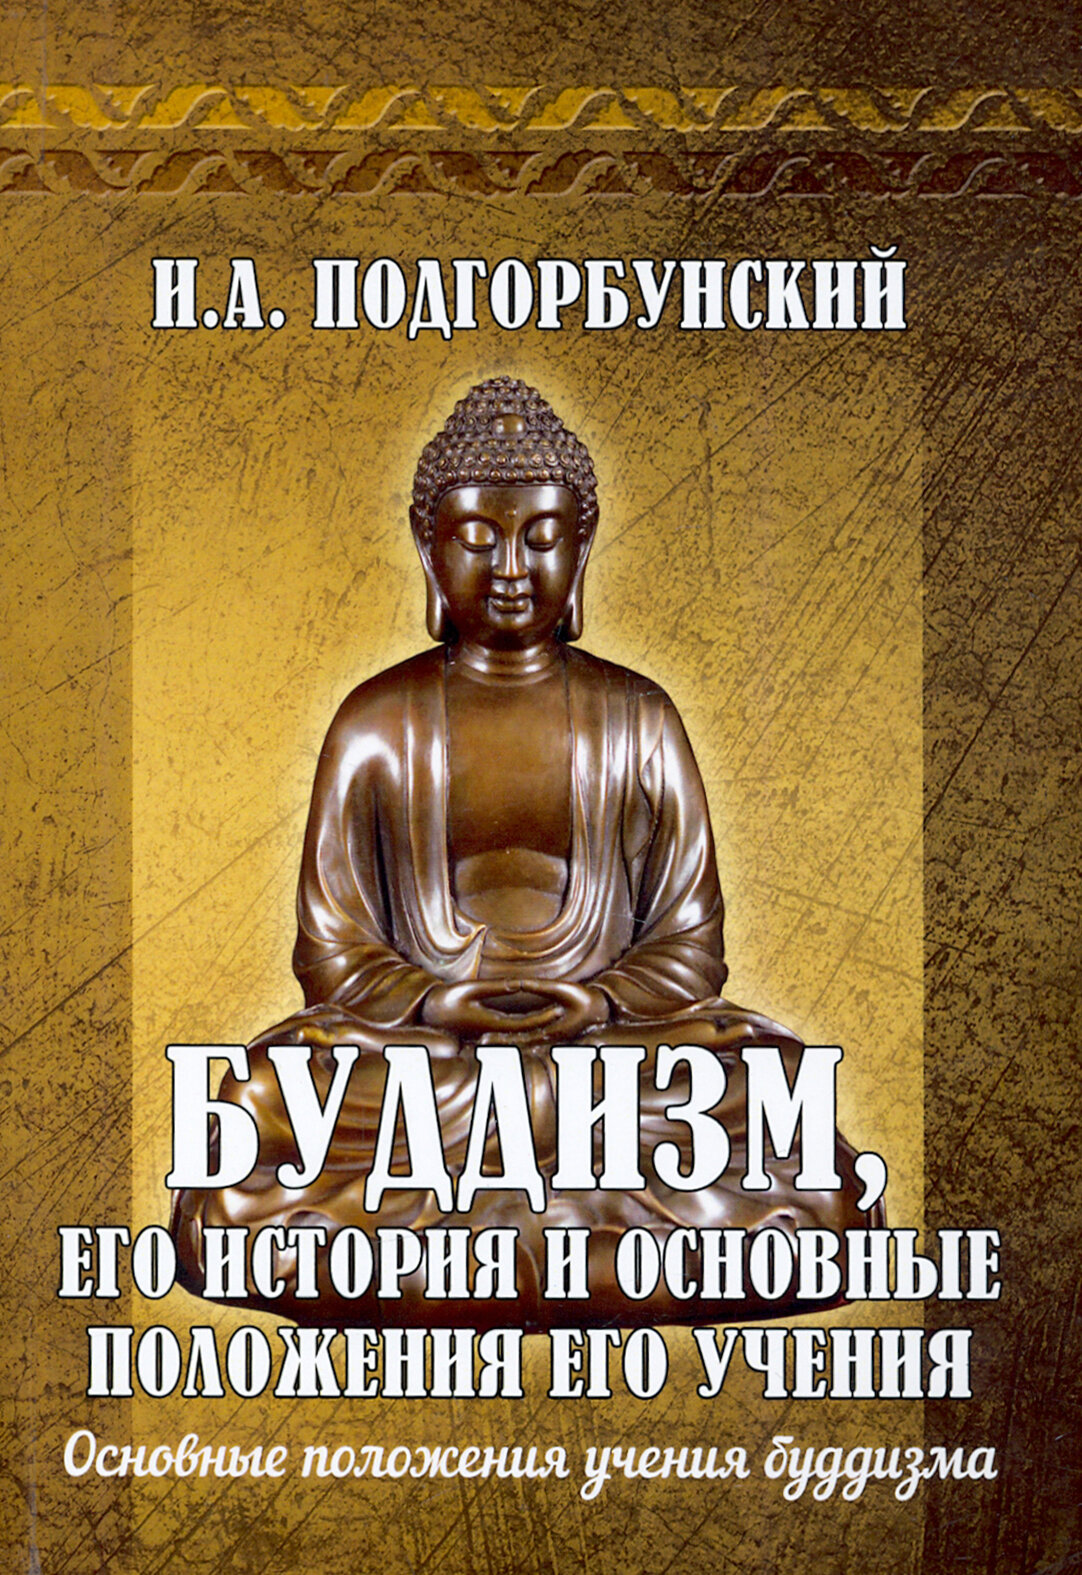 Буддизм, его история и основные положения его учения. Том 2 - фото №2